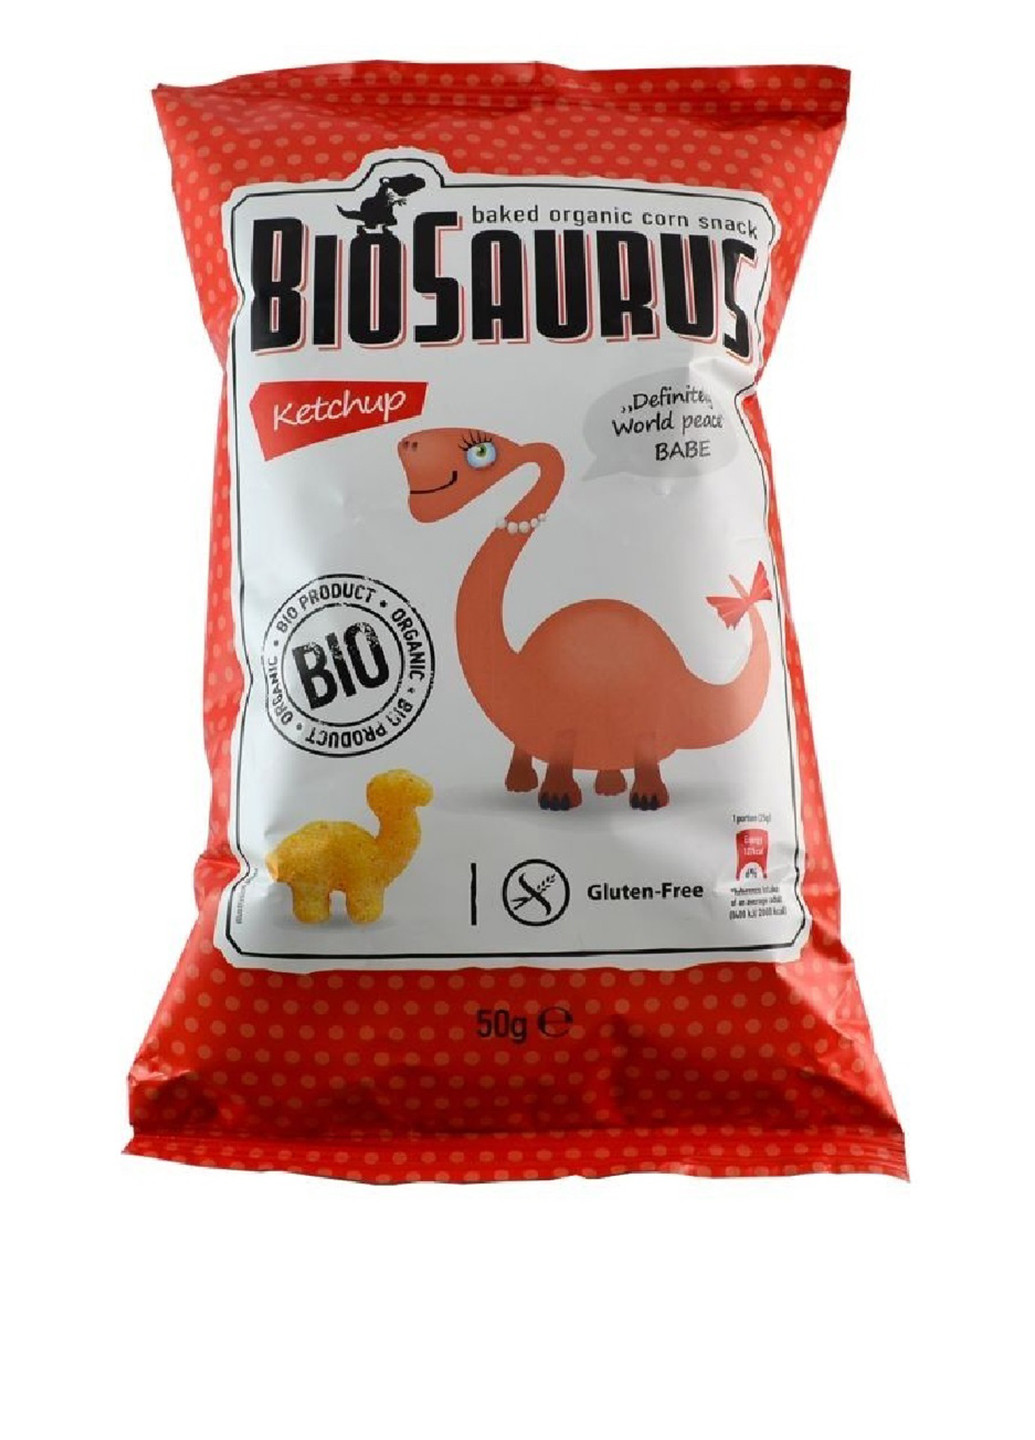 Снеки кукурудзяні у формі динозаврів (з кетчупом) органічні, 50 г Biosaurus